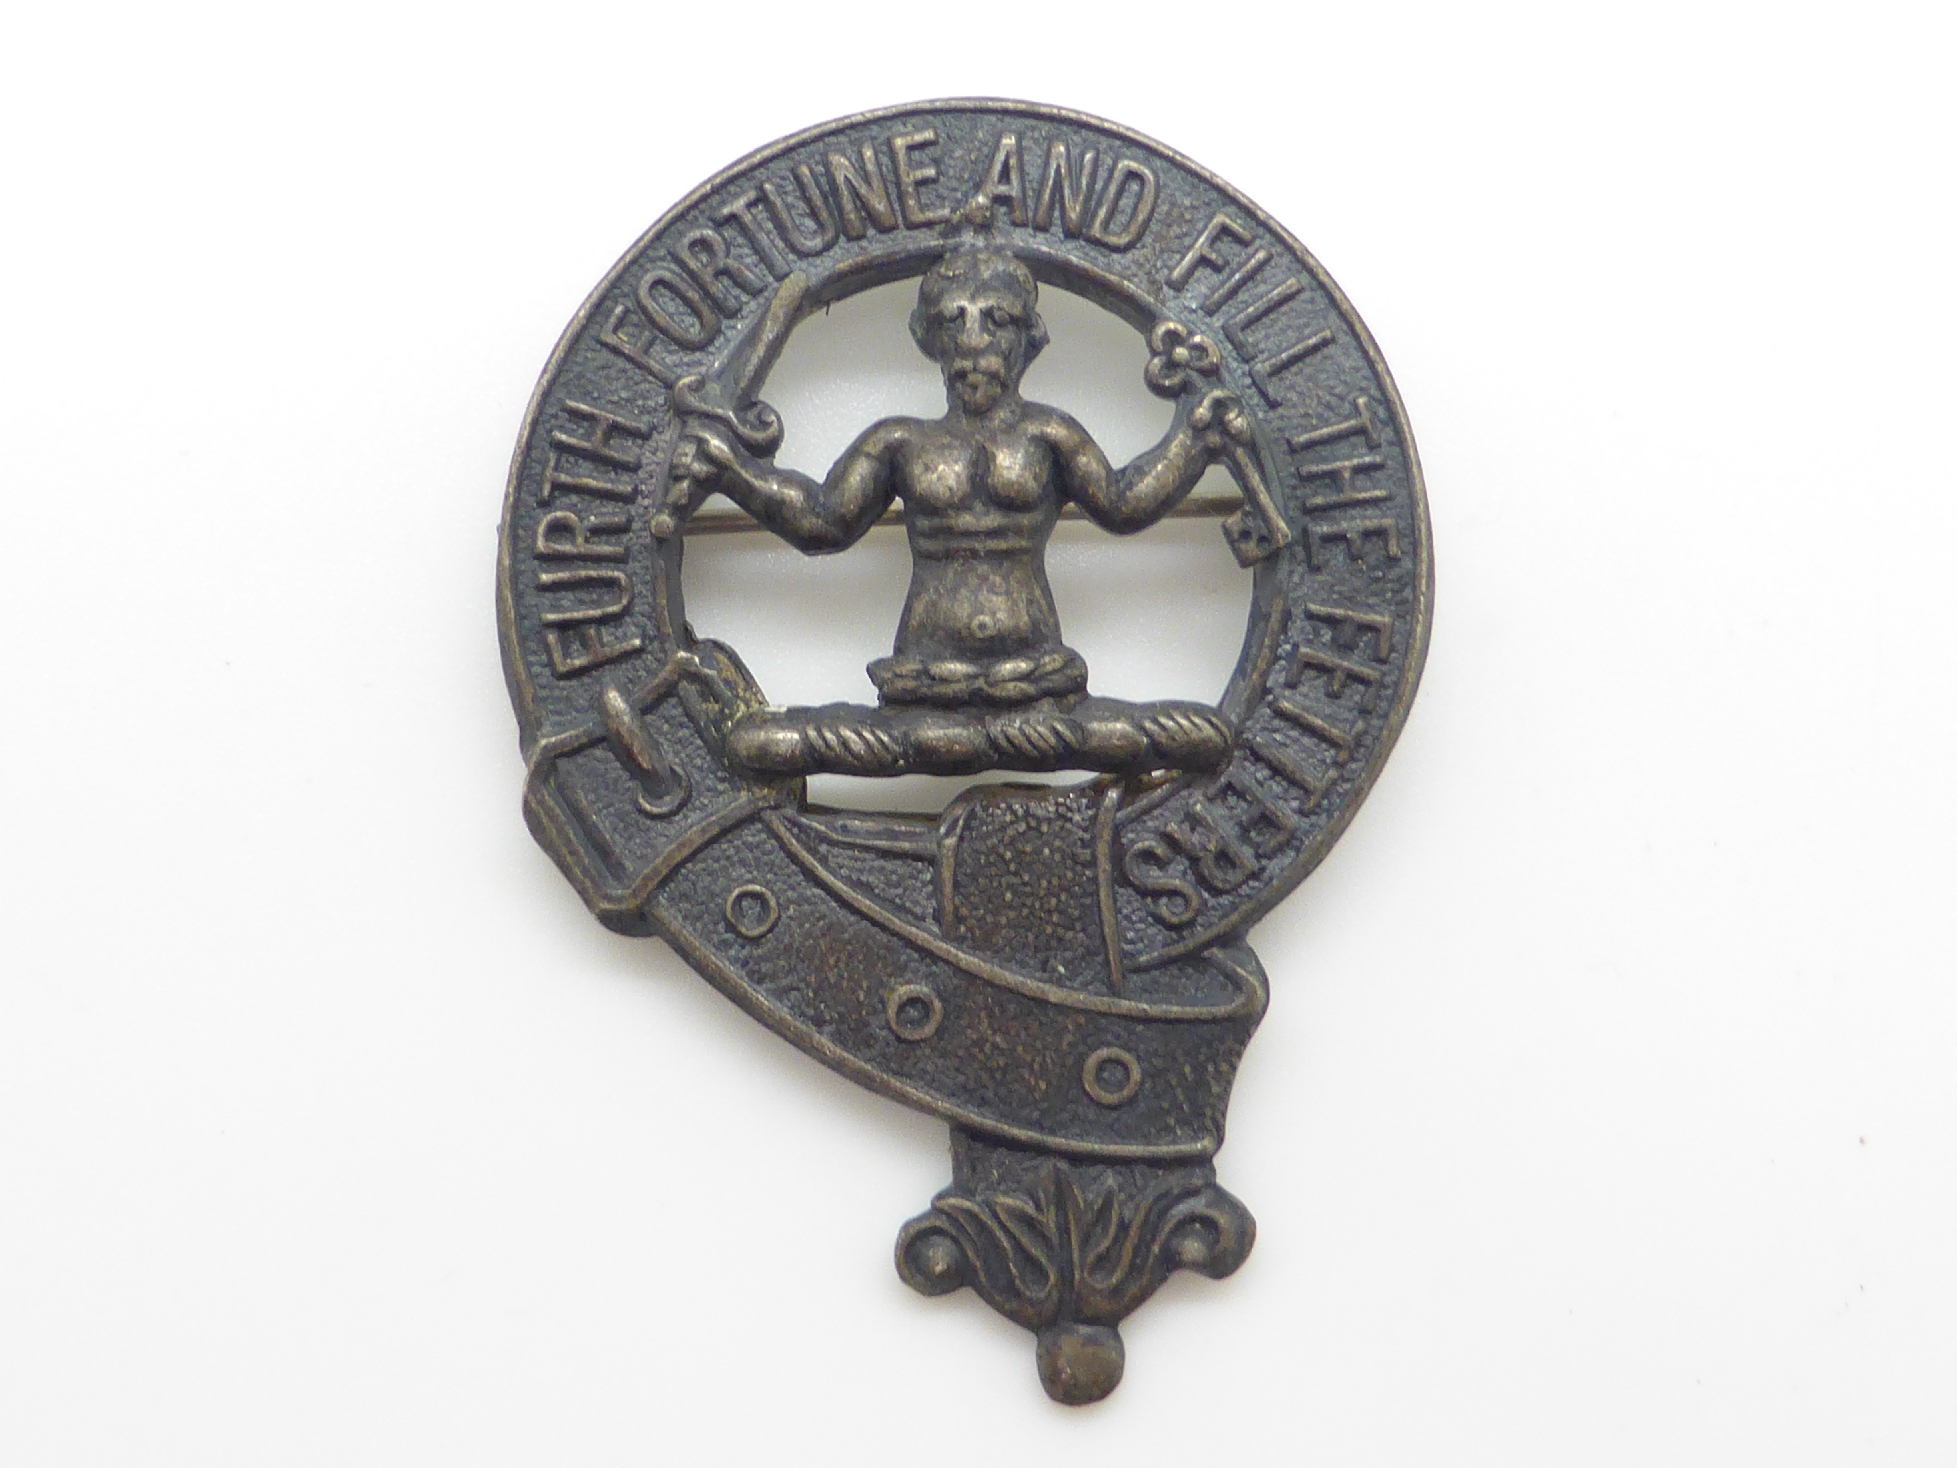 Elizabeth II Imperial Service Medal named to Mrs Jean Margaret Rose together with a WWII War Medal - Image 9 of 47